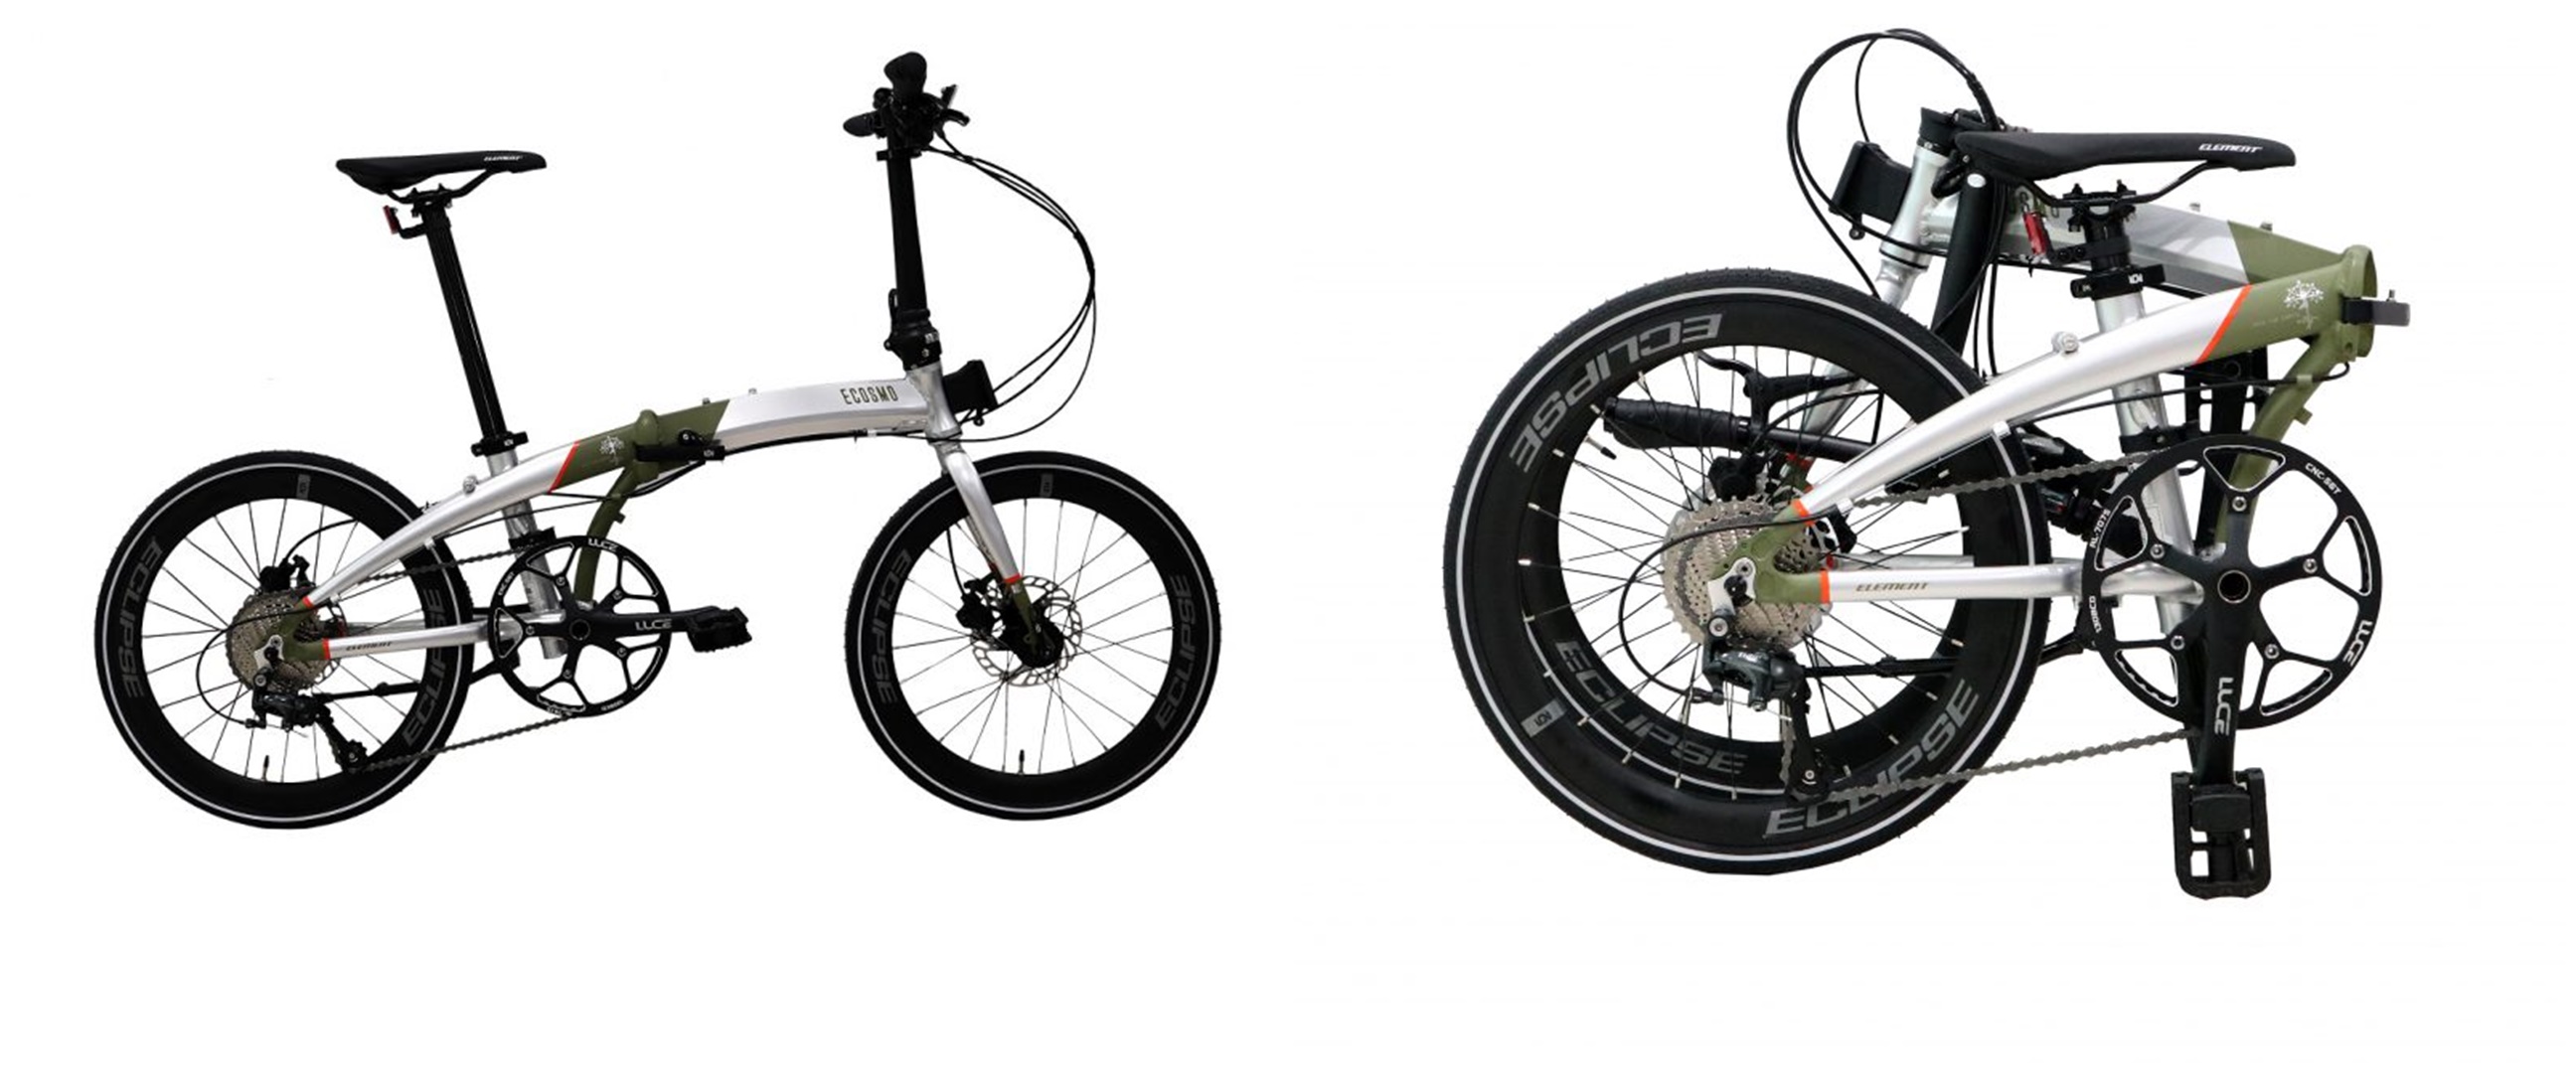 Harga sepeda Element Ecosmo 10 dan spesifikasi, simpel dan modern